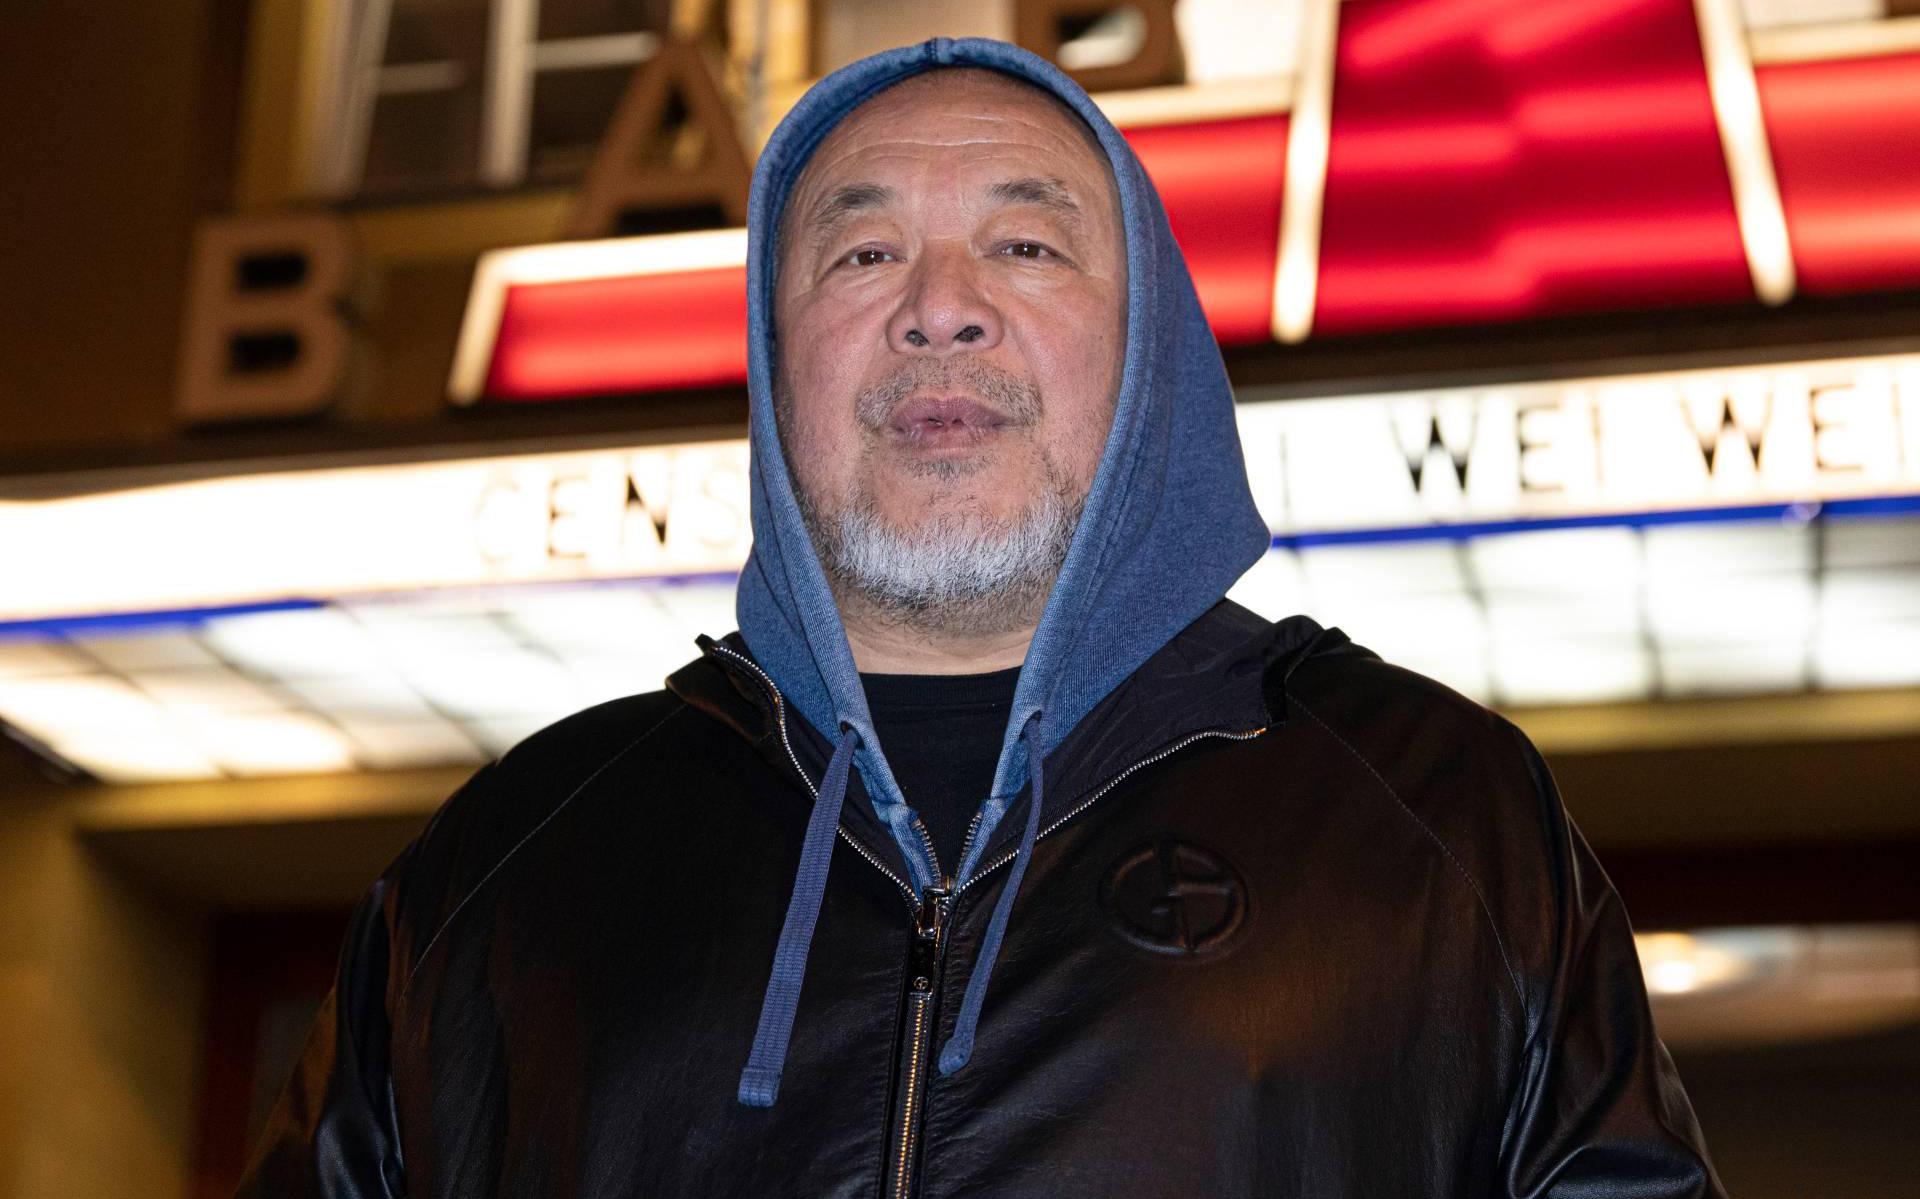 Kunstenaar Ai Weiwei brengt film over lockdown in Wuhan uit